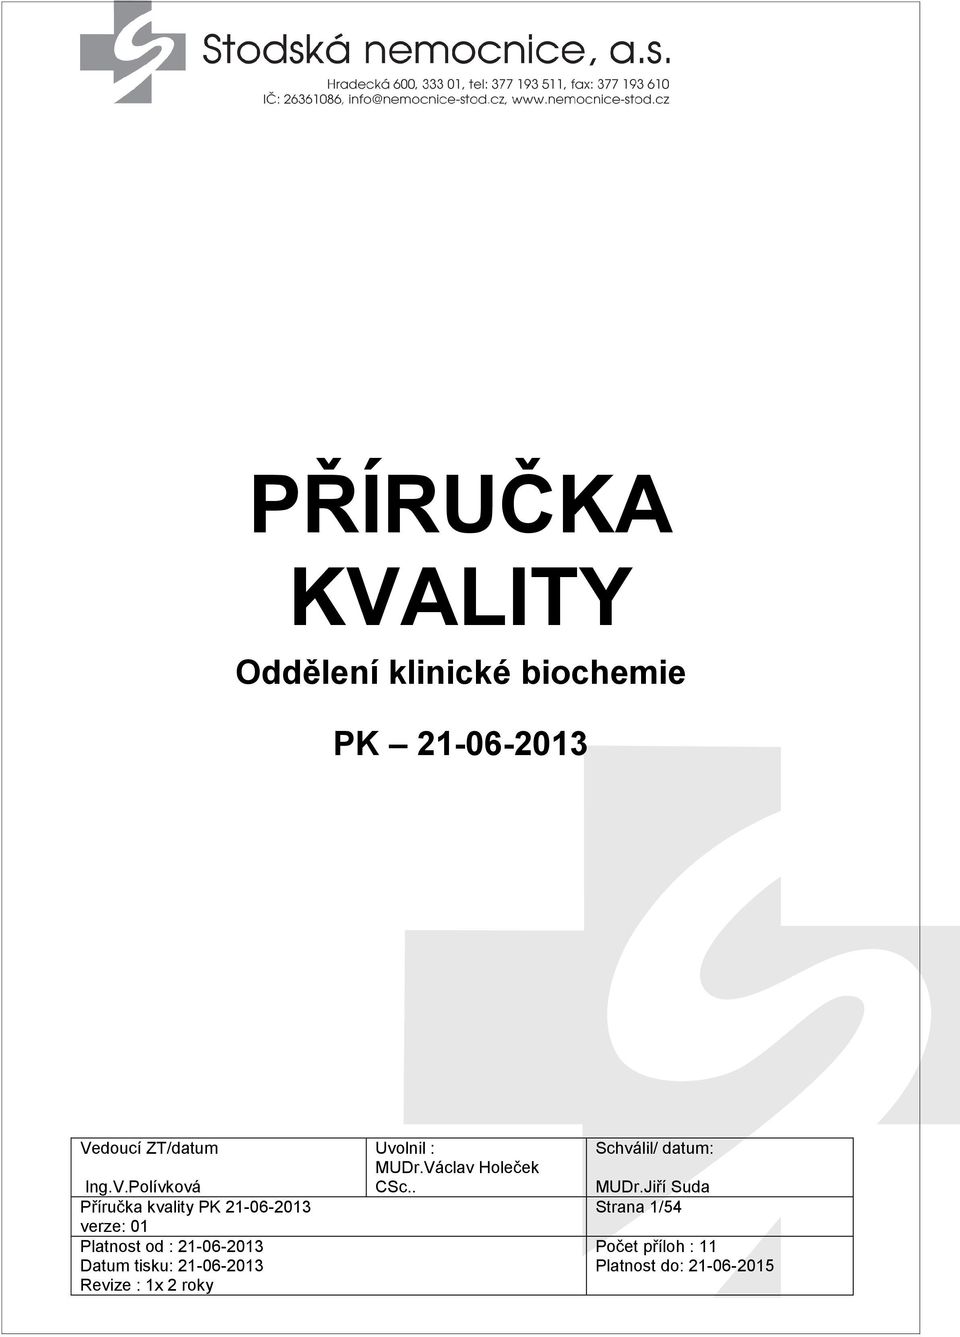 Příručka kvality PK 21-06-2013